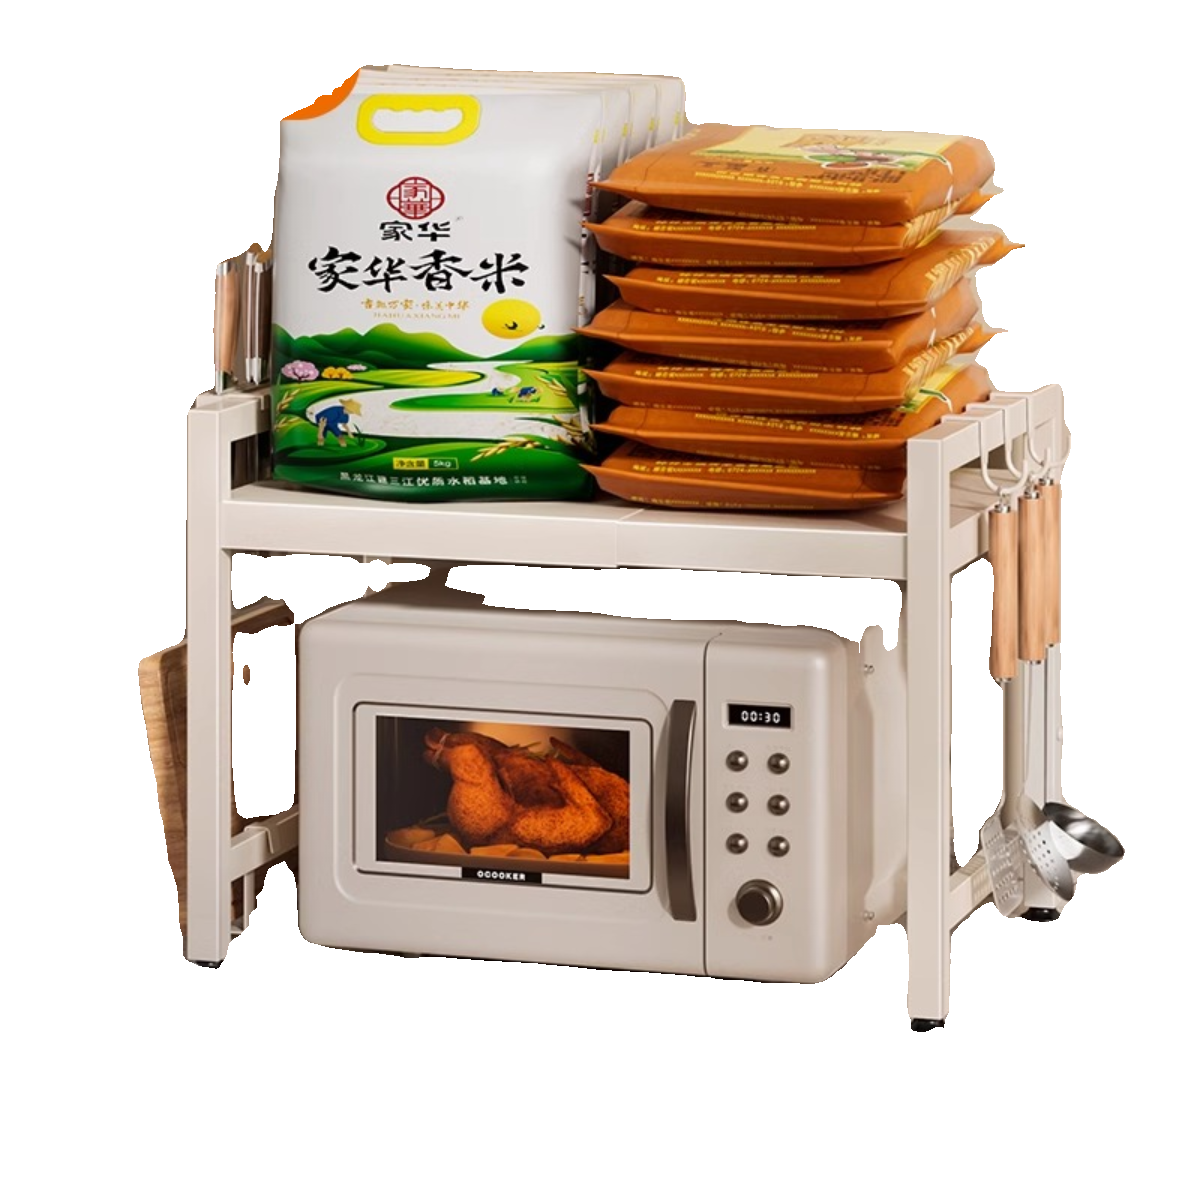 卡贝厨房微波炉置物架家用多功能可伸缩台面双层烤箱电饭煲收纳架